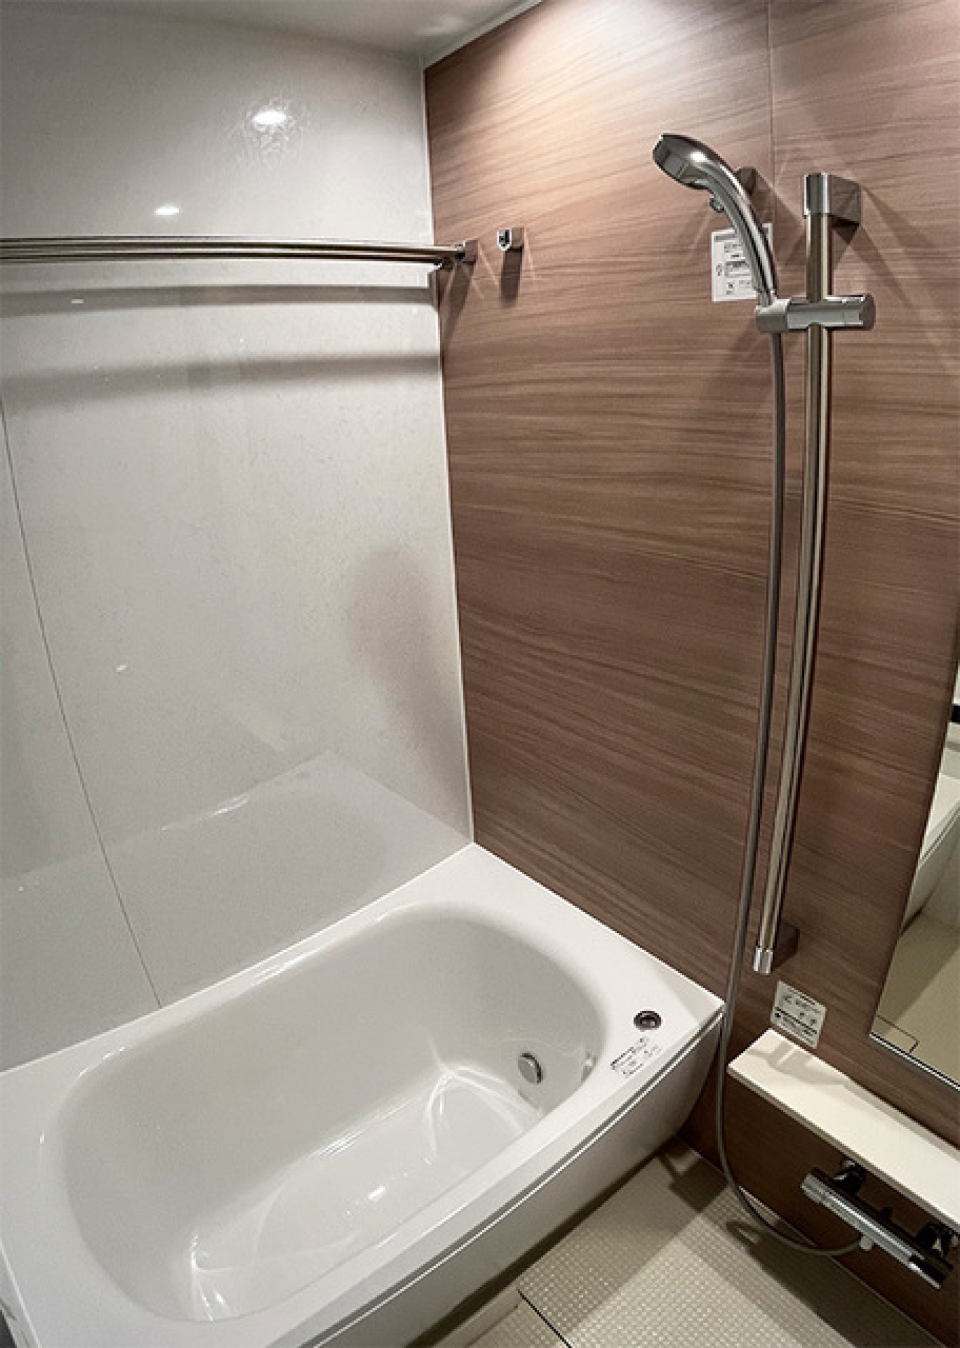 ブラウンの木目調のパネルが導入された浴室です。※写真は同タイプ住戸です。